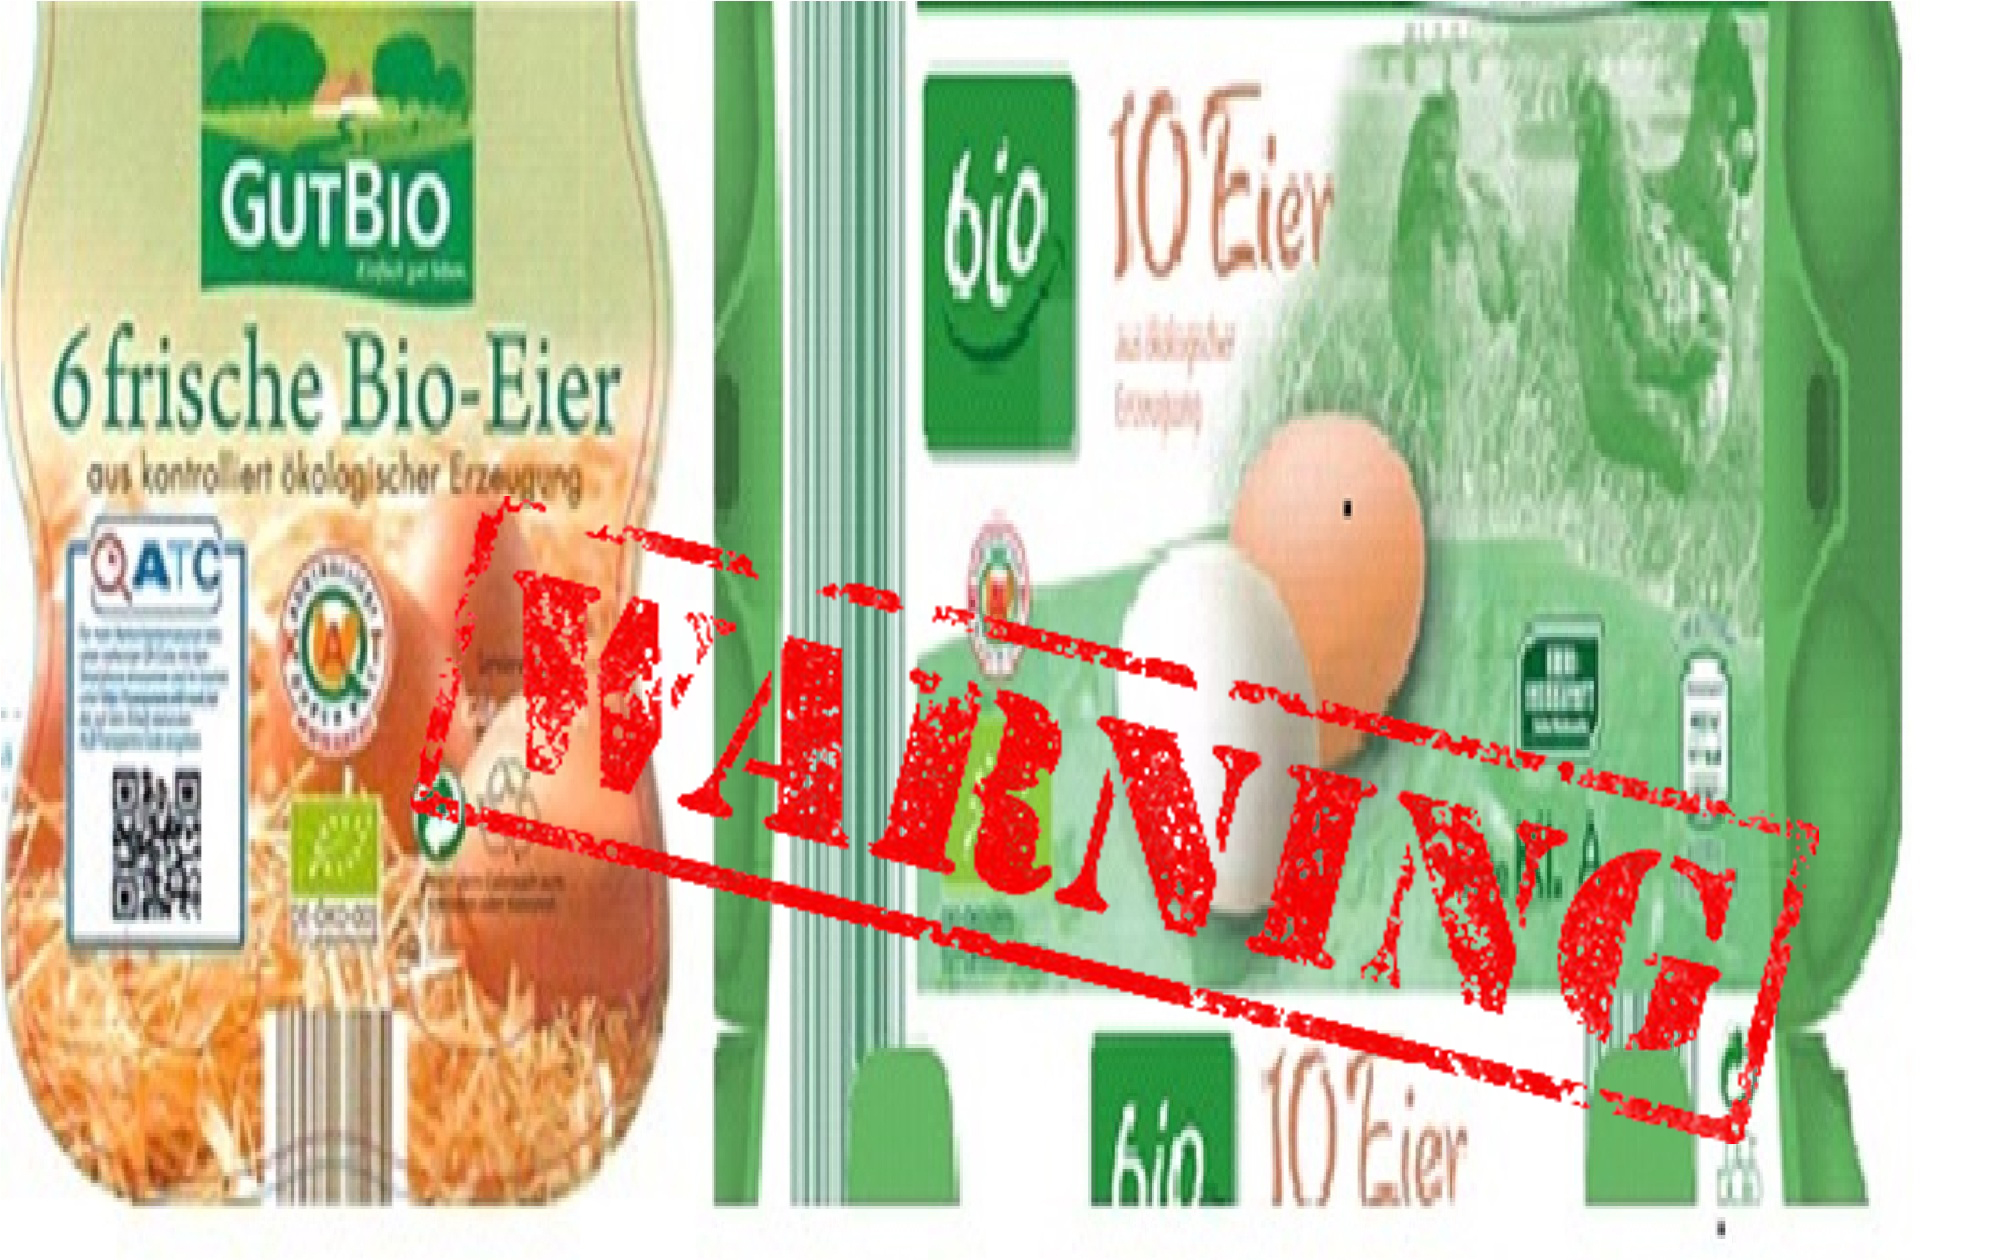 Γερμανία: Προσοχή! Ανακαλούνται Βιολογικά Αυγά λόγω Σαλμονέλας